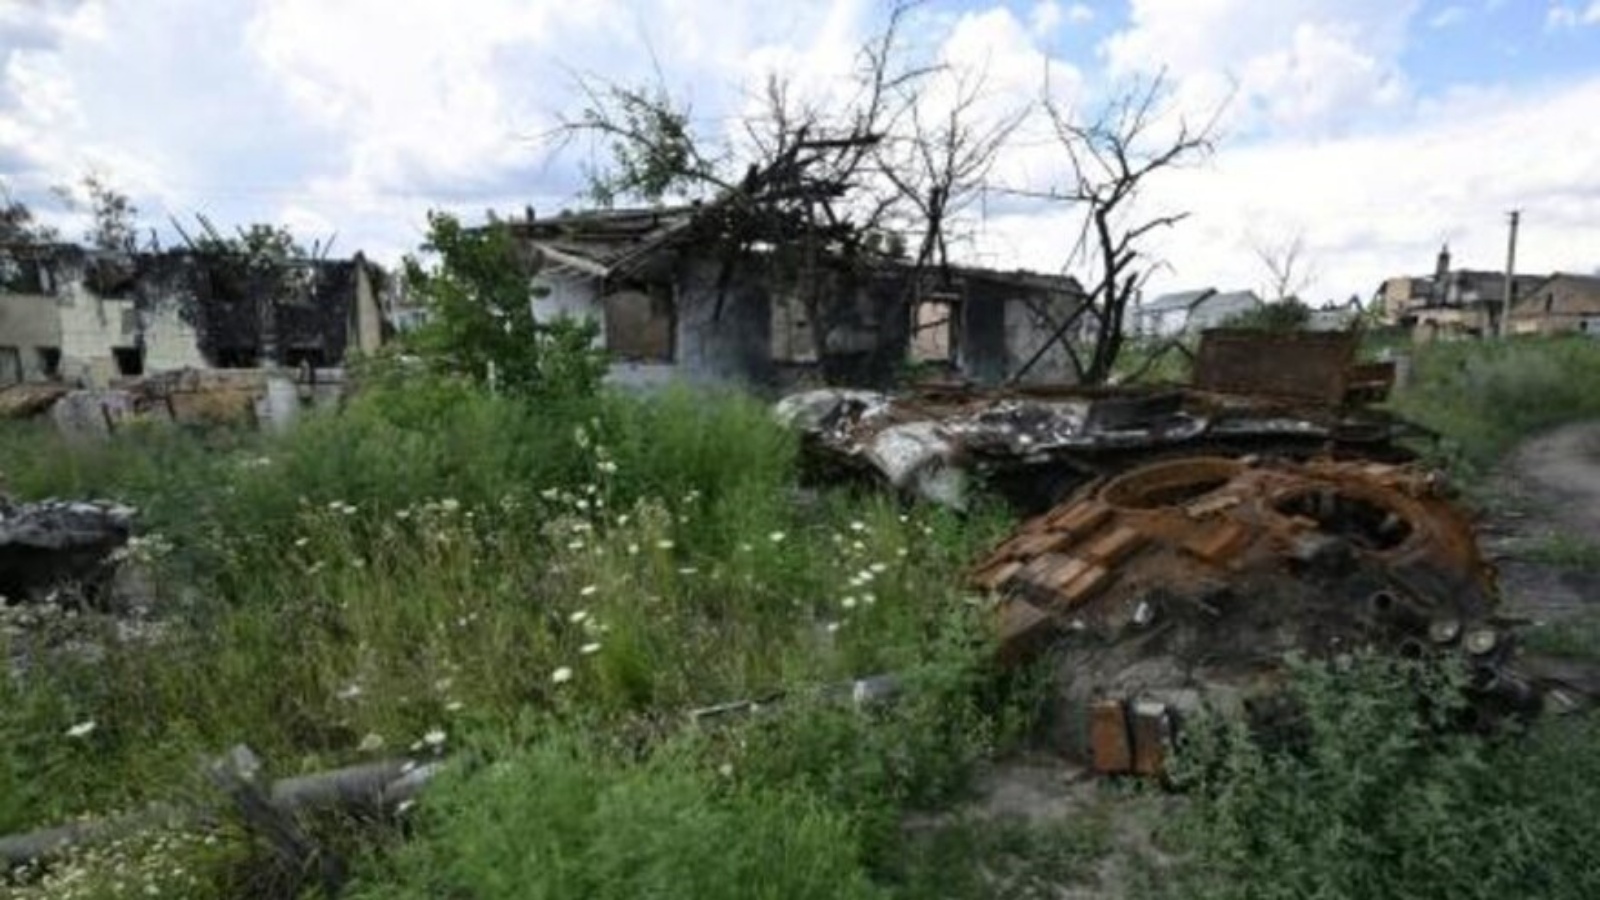  هيكل دبابة روسية مدمرة قرب منزل مهدوم في قرية مالا روغان بمنطقة خاركيف بشمال شرق أوكرانيا في 28 يوليو 2022